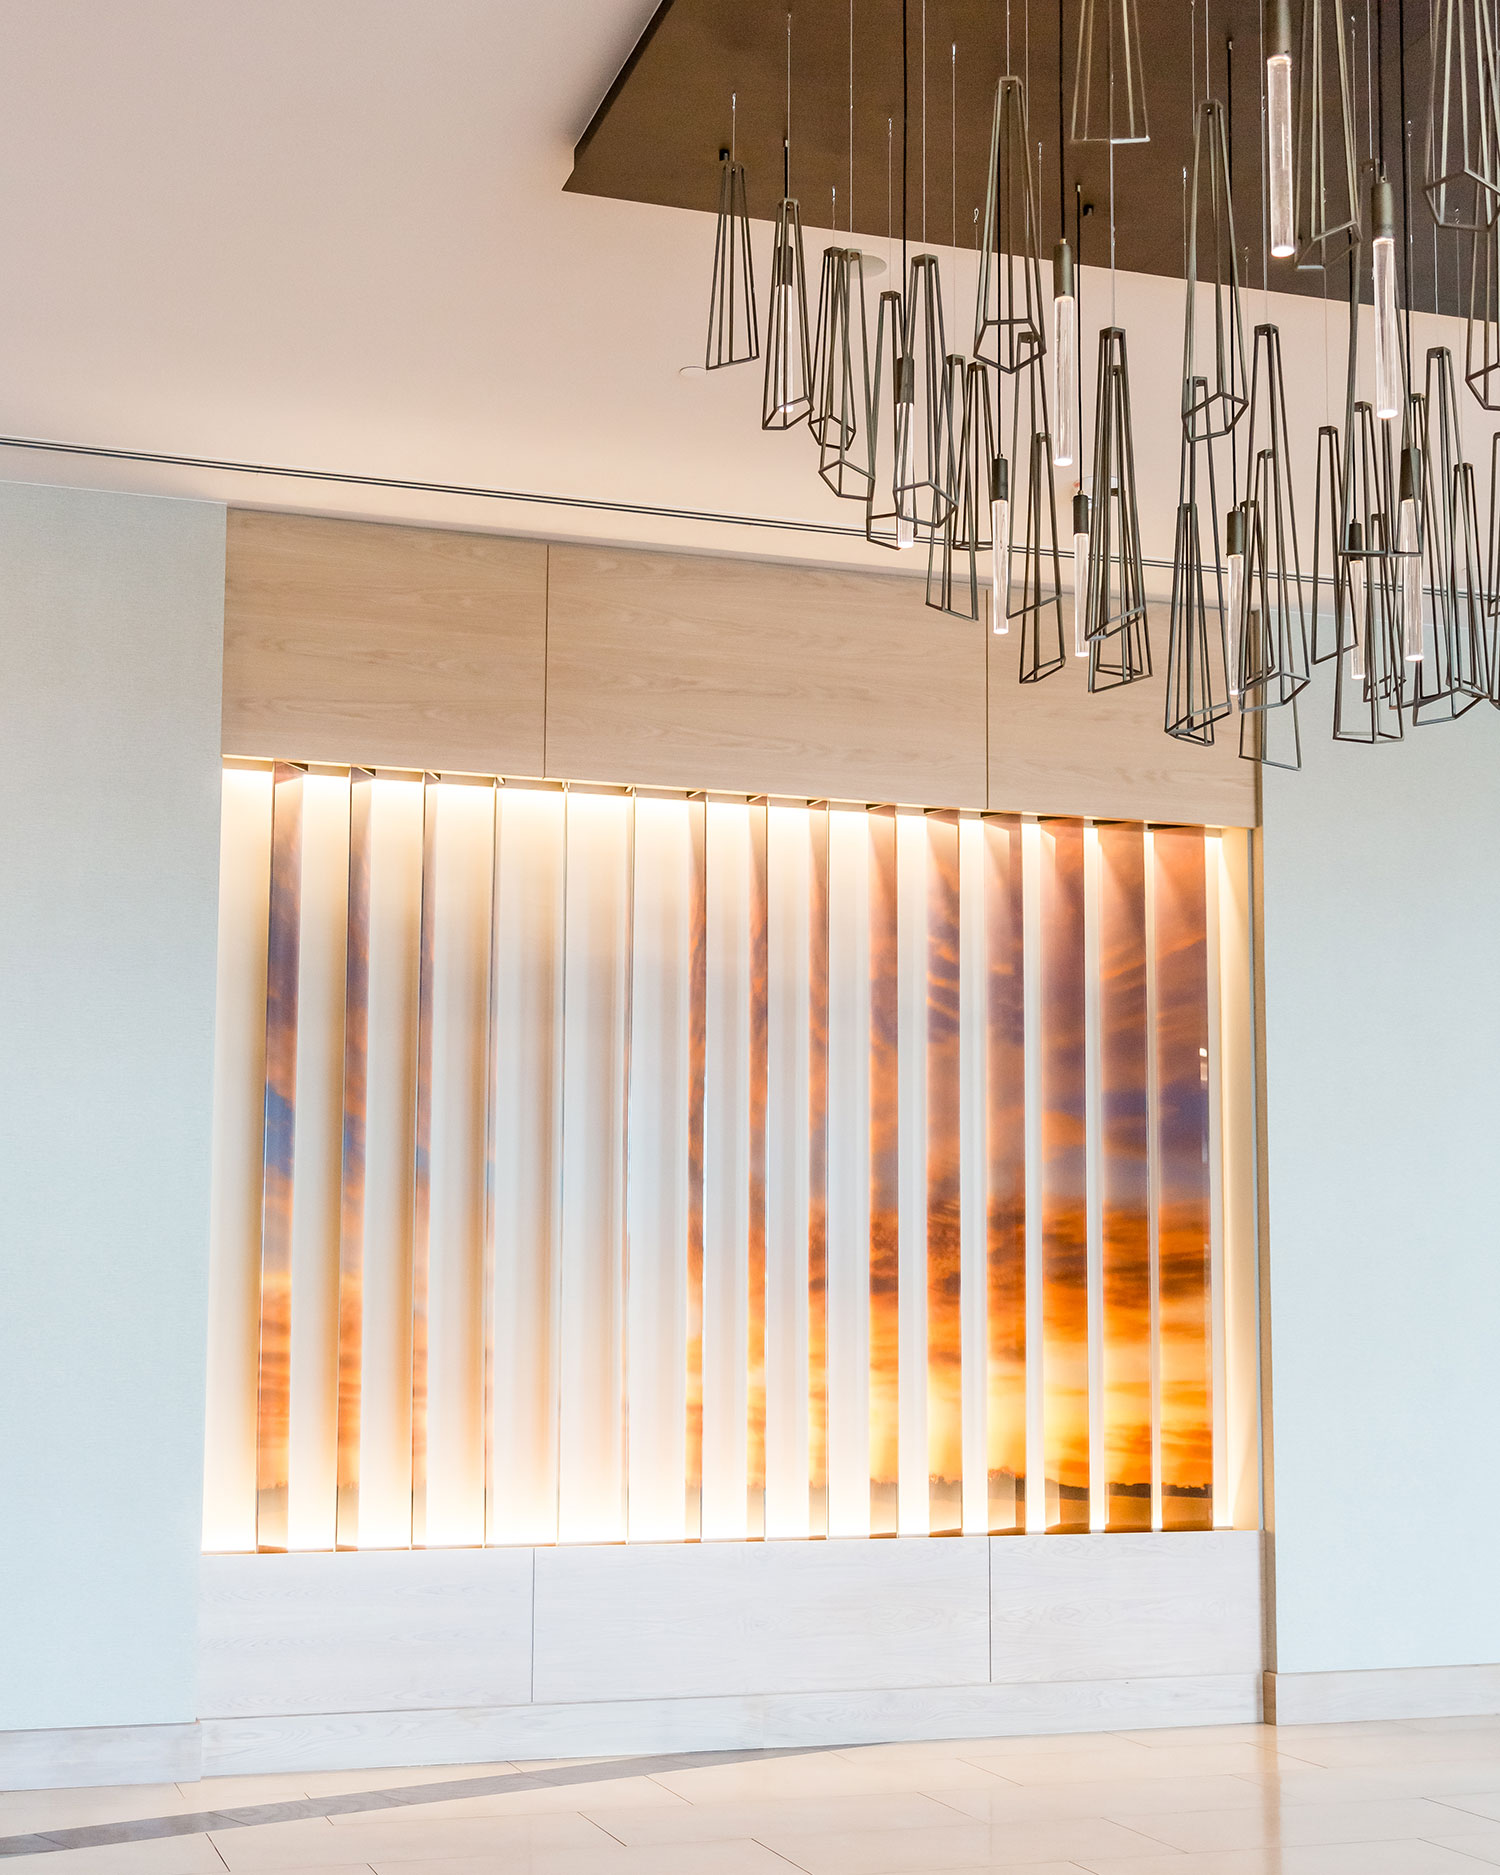 A lobby installation evokes a Texas sunset // photos Jennifer Shertzer